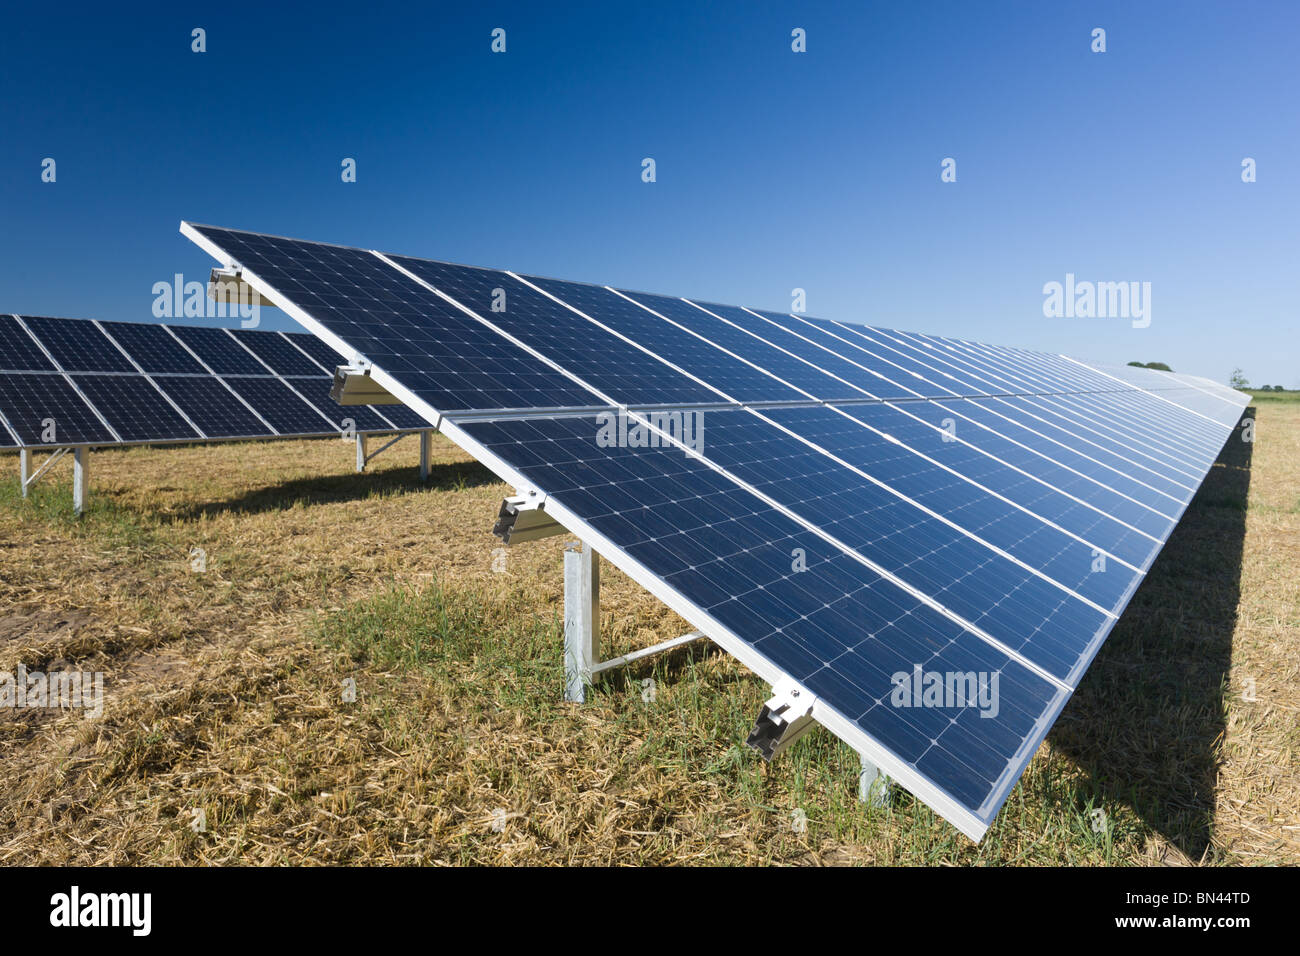 Fotovoltaiche moduli in una fattoria solare Foto Stock